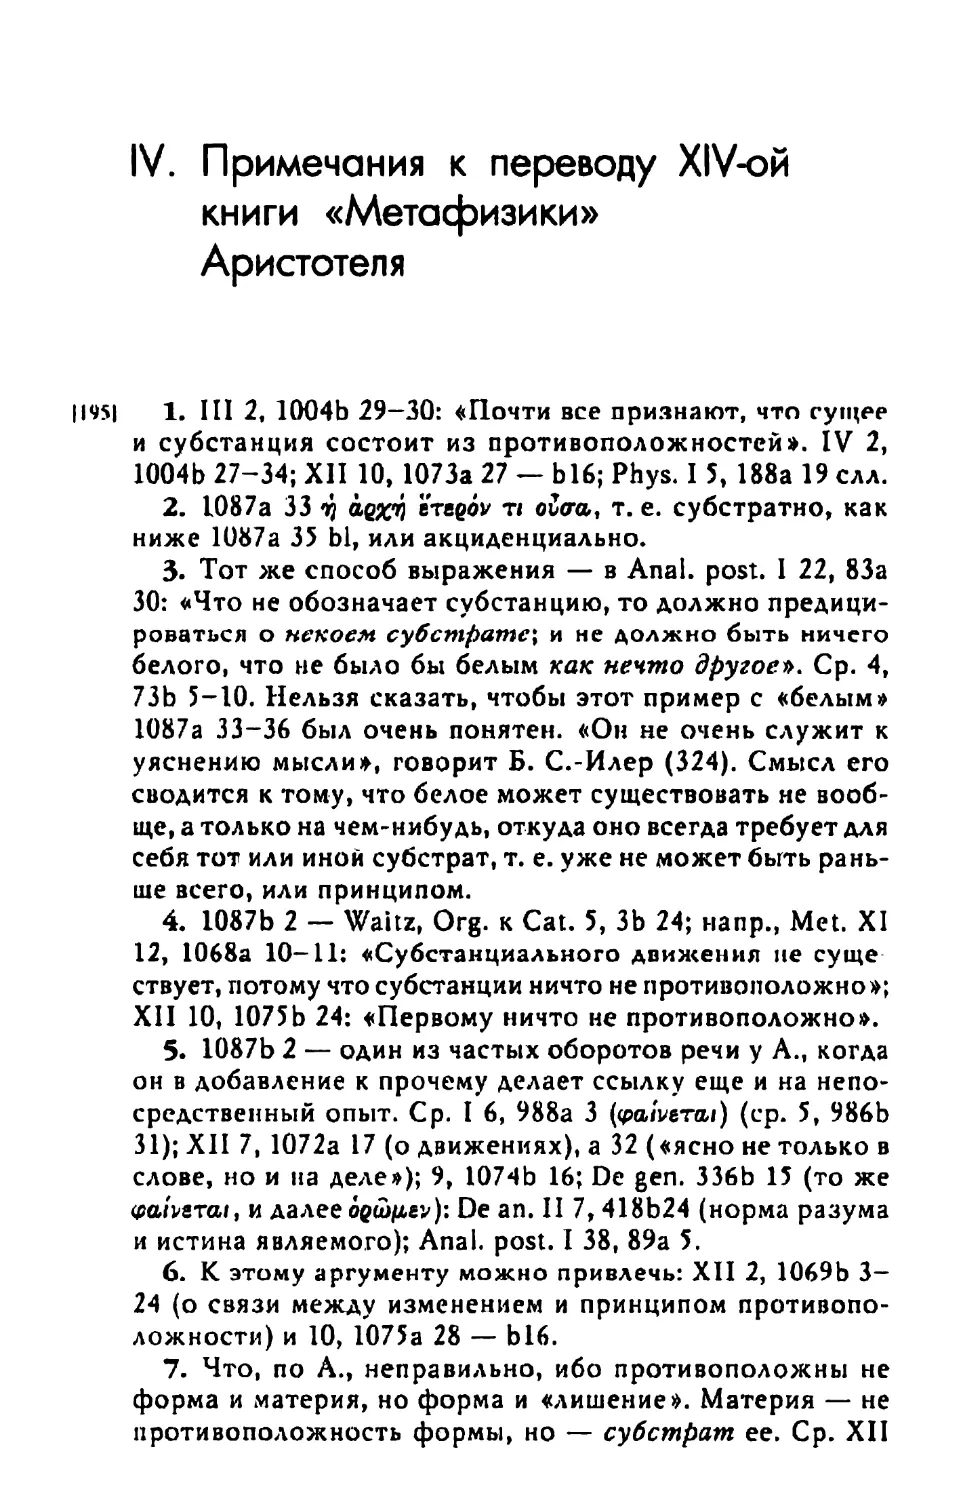 Примечания к переводу XIV-ой книги «Метафизики» Аристотеля